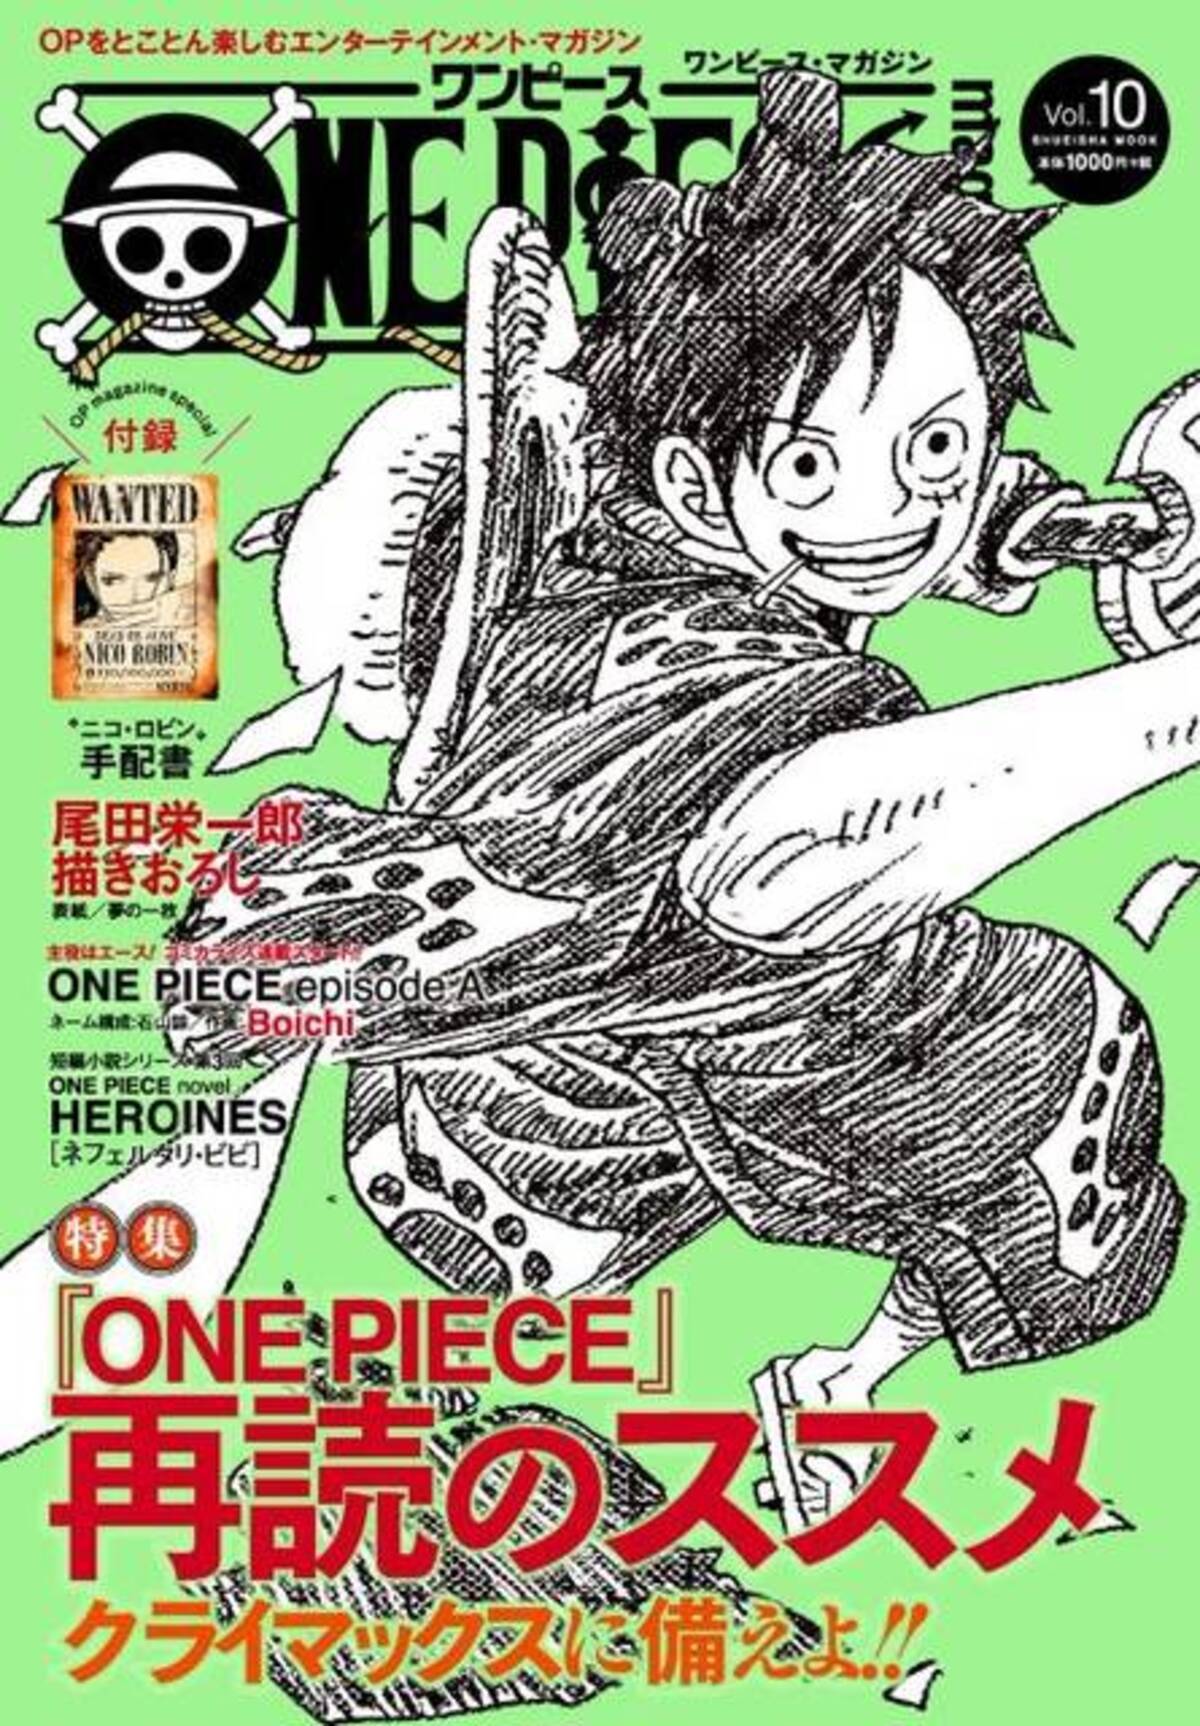 One Piece 麦わらの一味にはもう一人加入する 初期設定画に描かれている人物は 年10月5日 エキサイトニュース